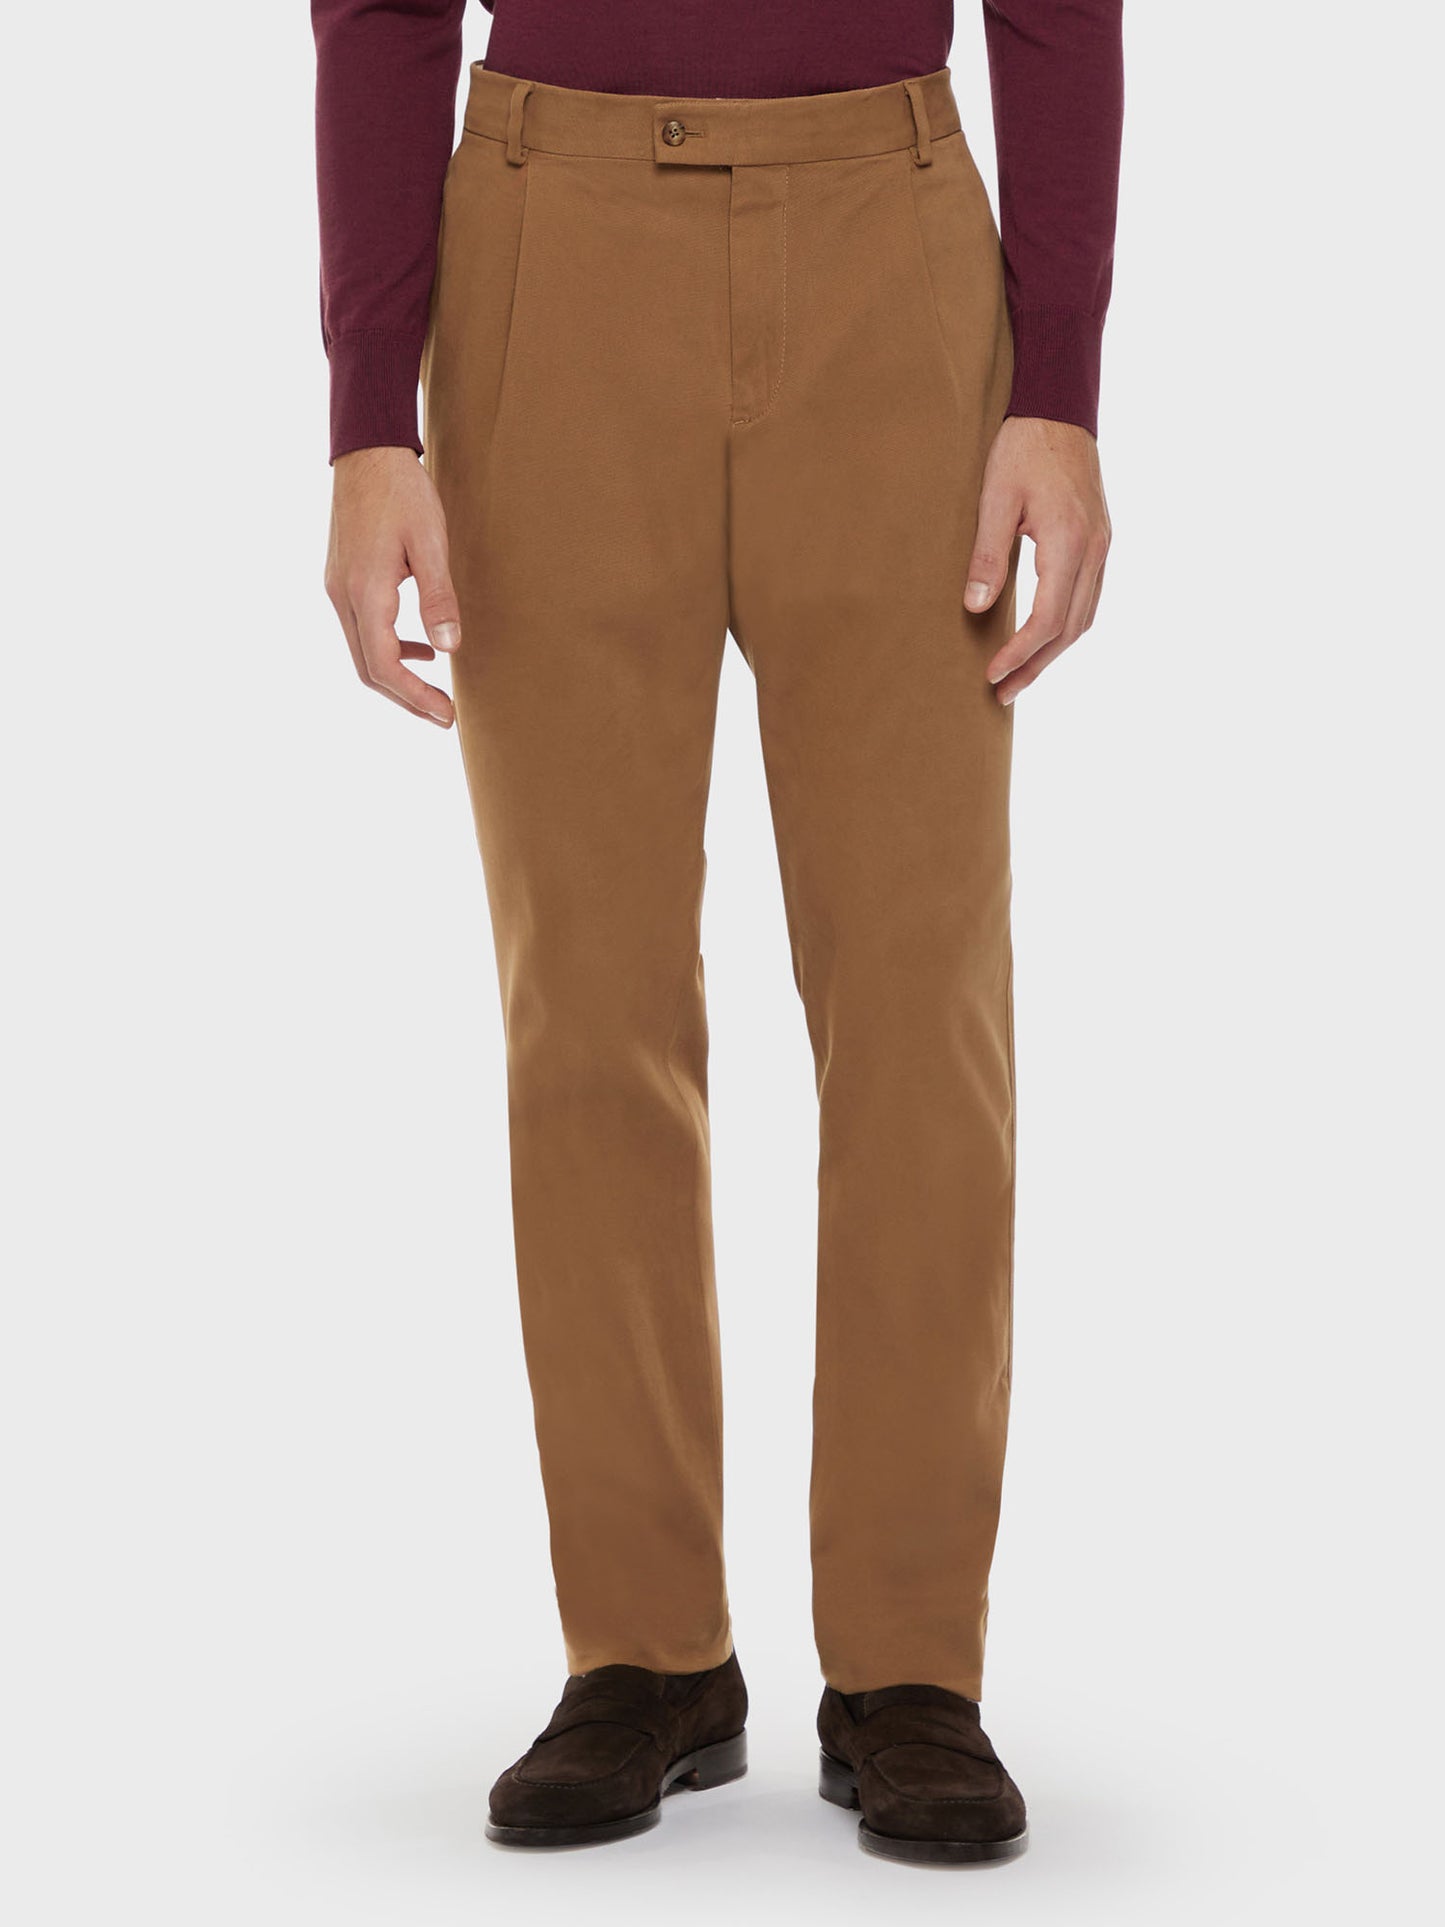 Caruso Menswear Abbigliamento Uomo Pantalone in cotone stretch color cammello indossati front